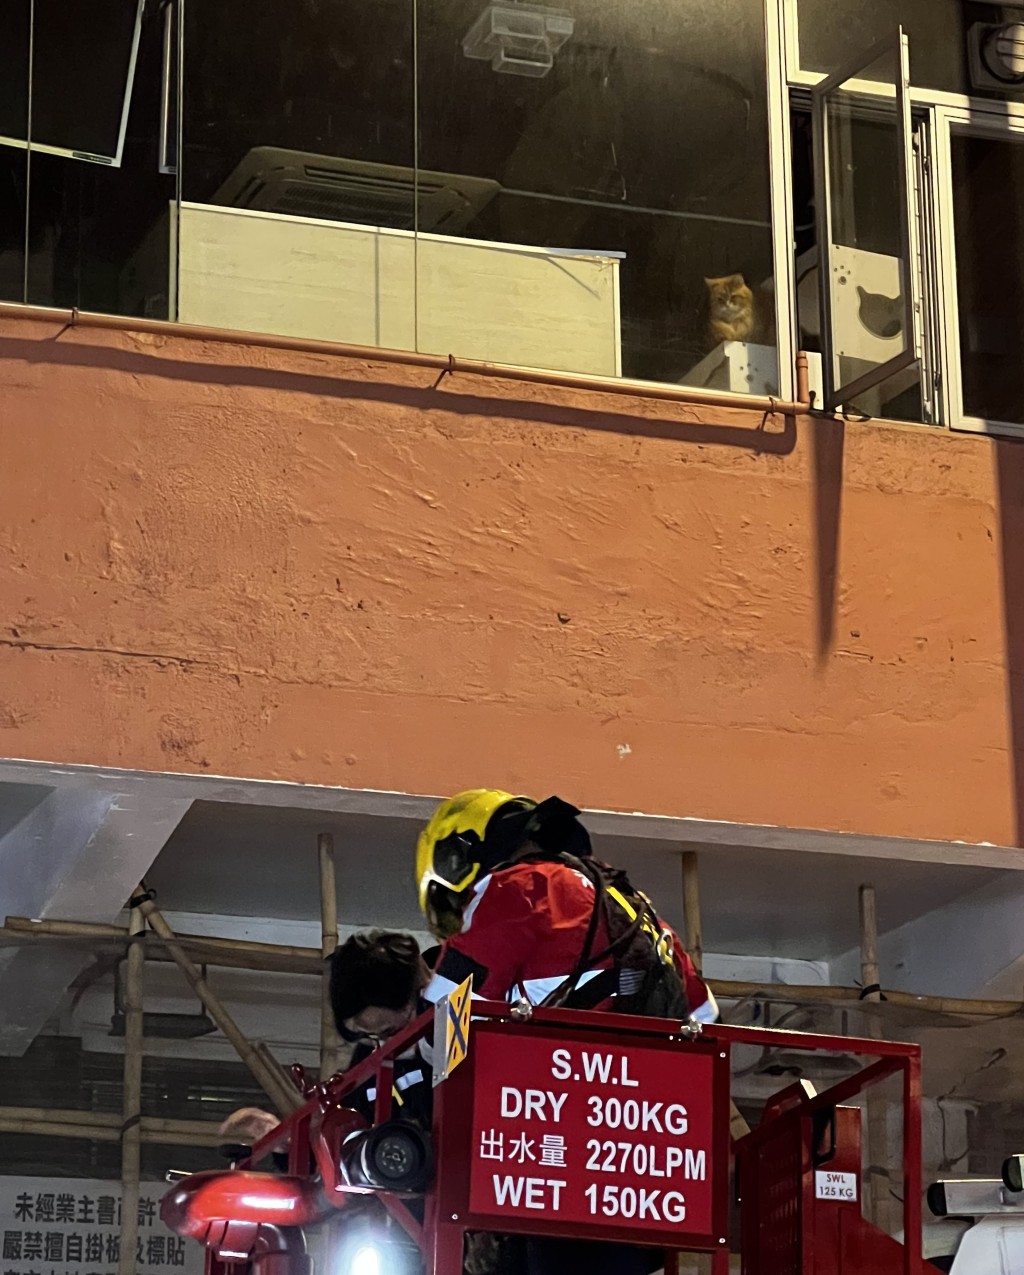 消防一度架起雲梯視察店內情況。讀者提供